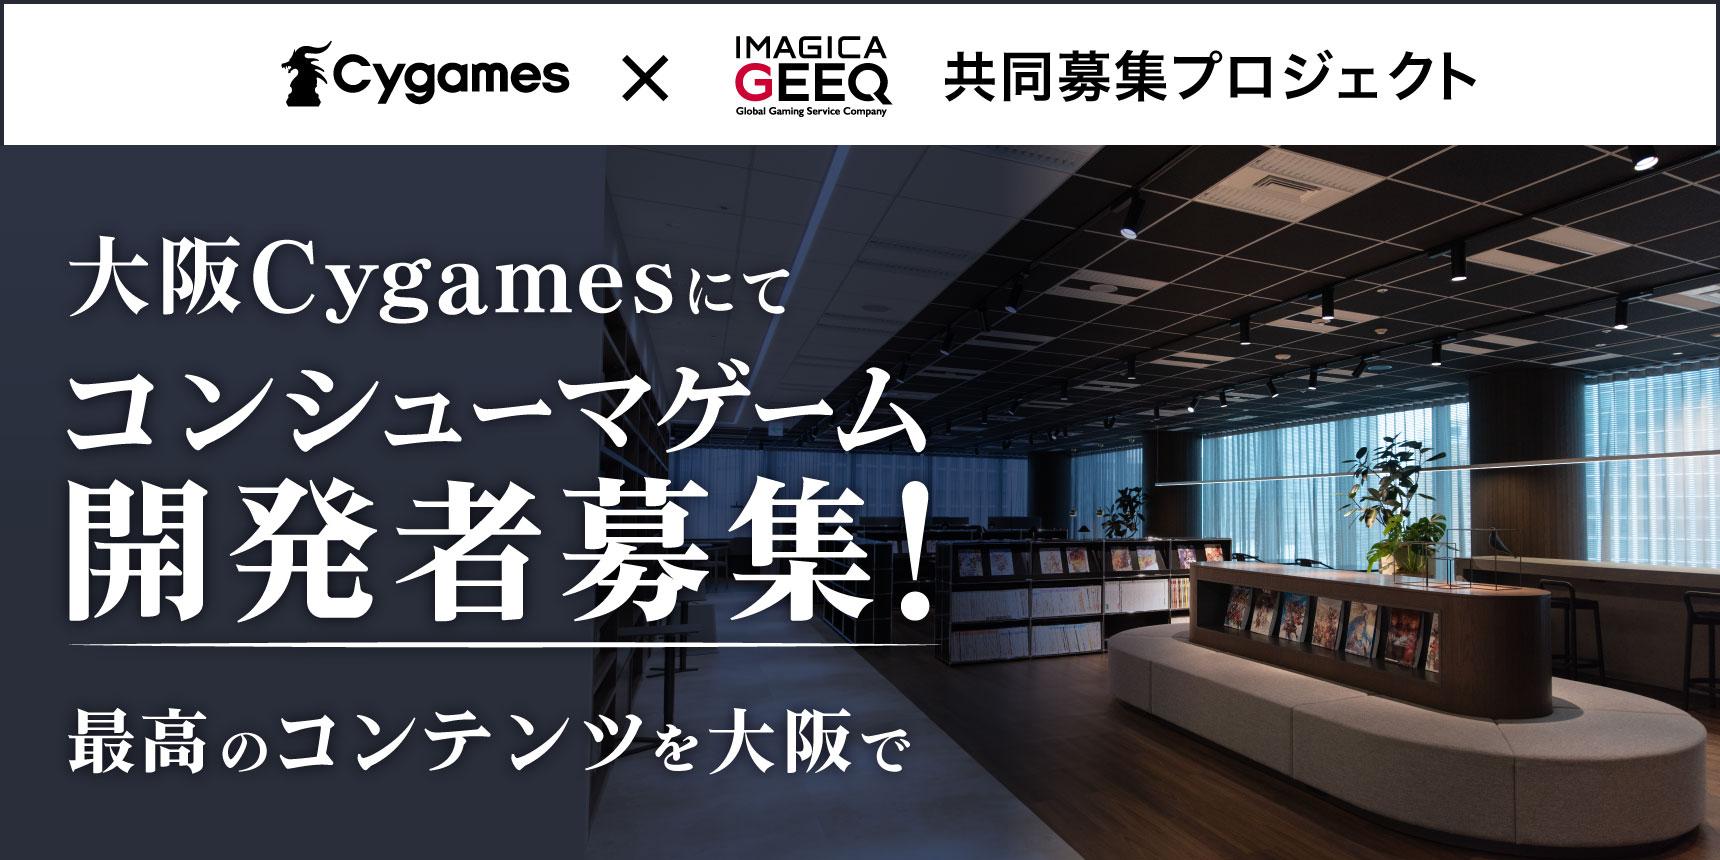 株式会社Cygames×IMAGICA GEEQ 共同募集プロジェクト